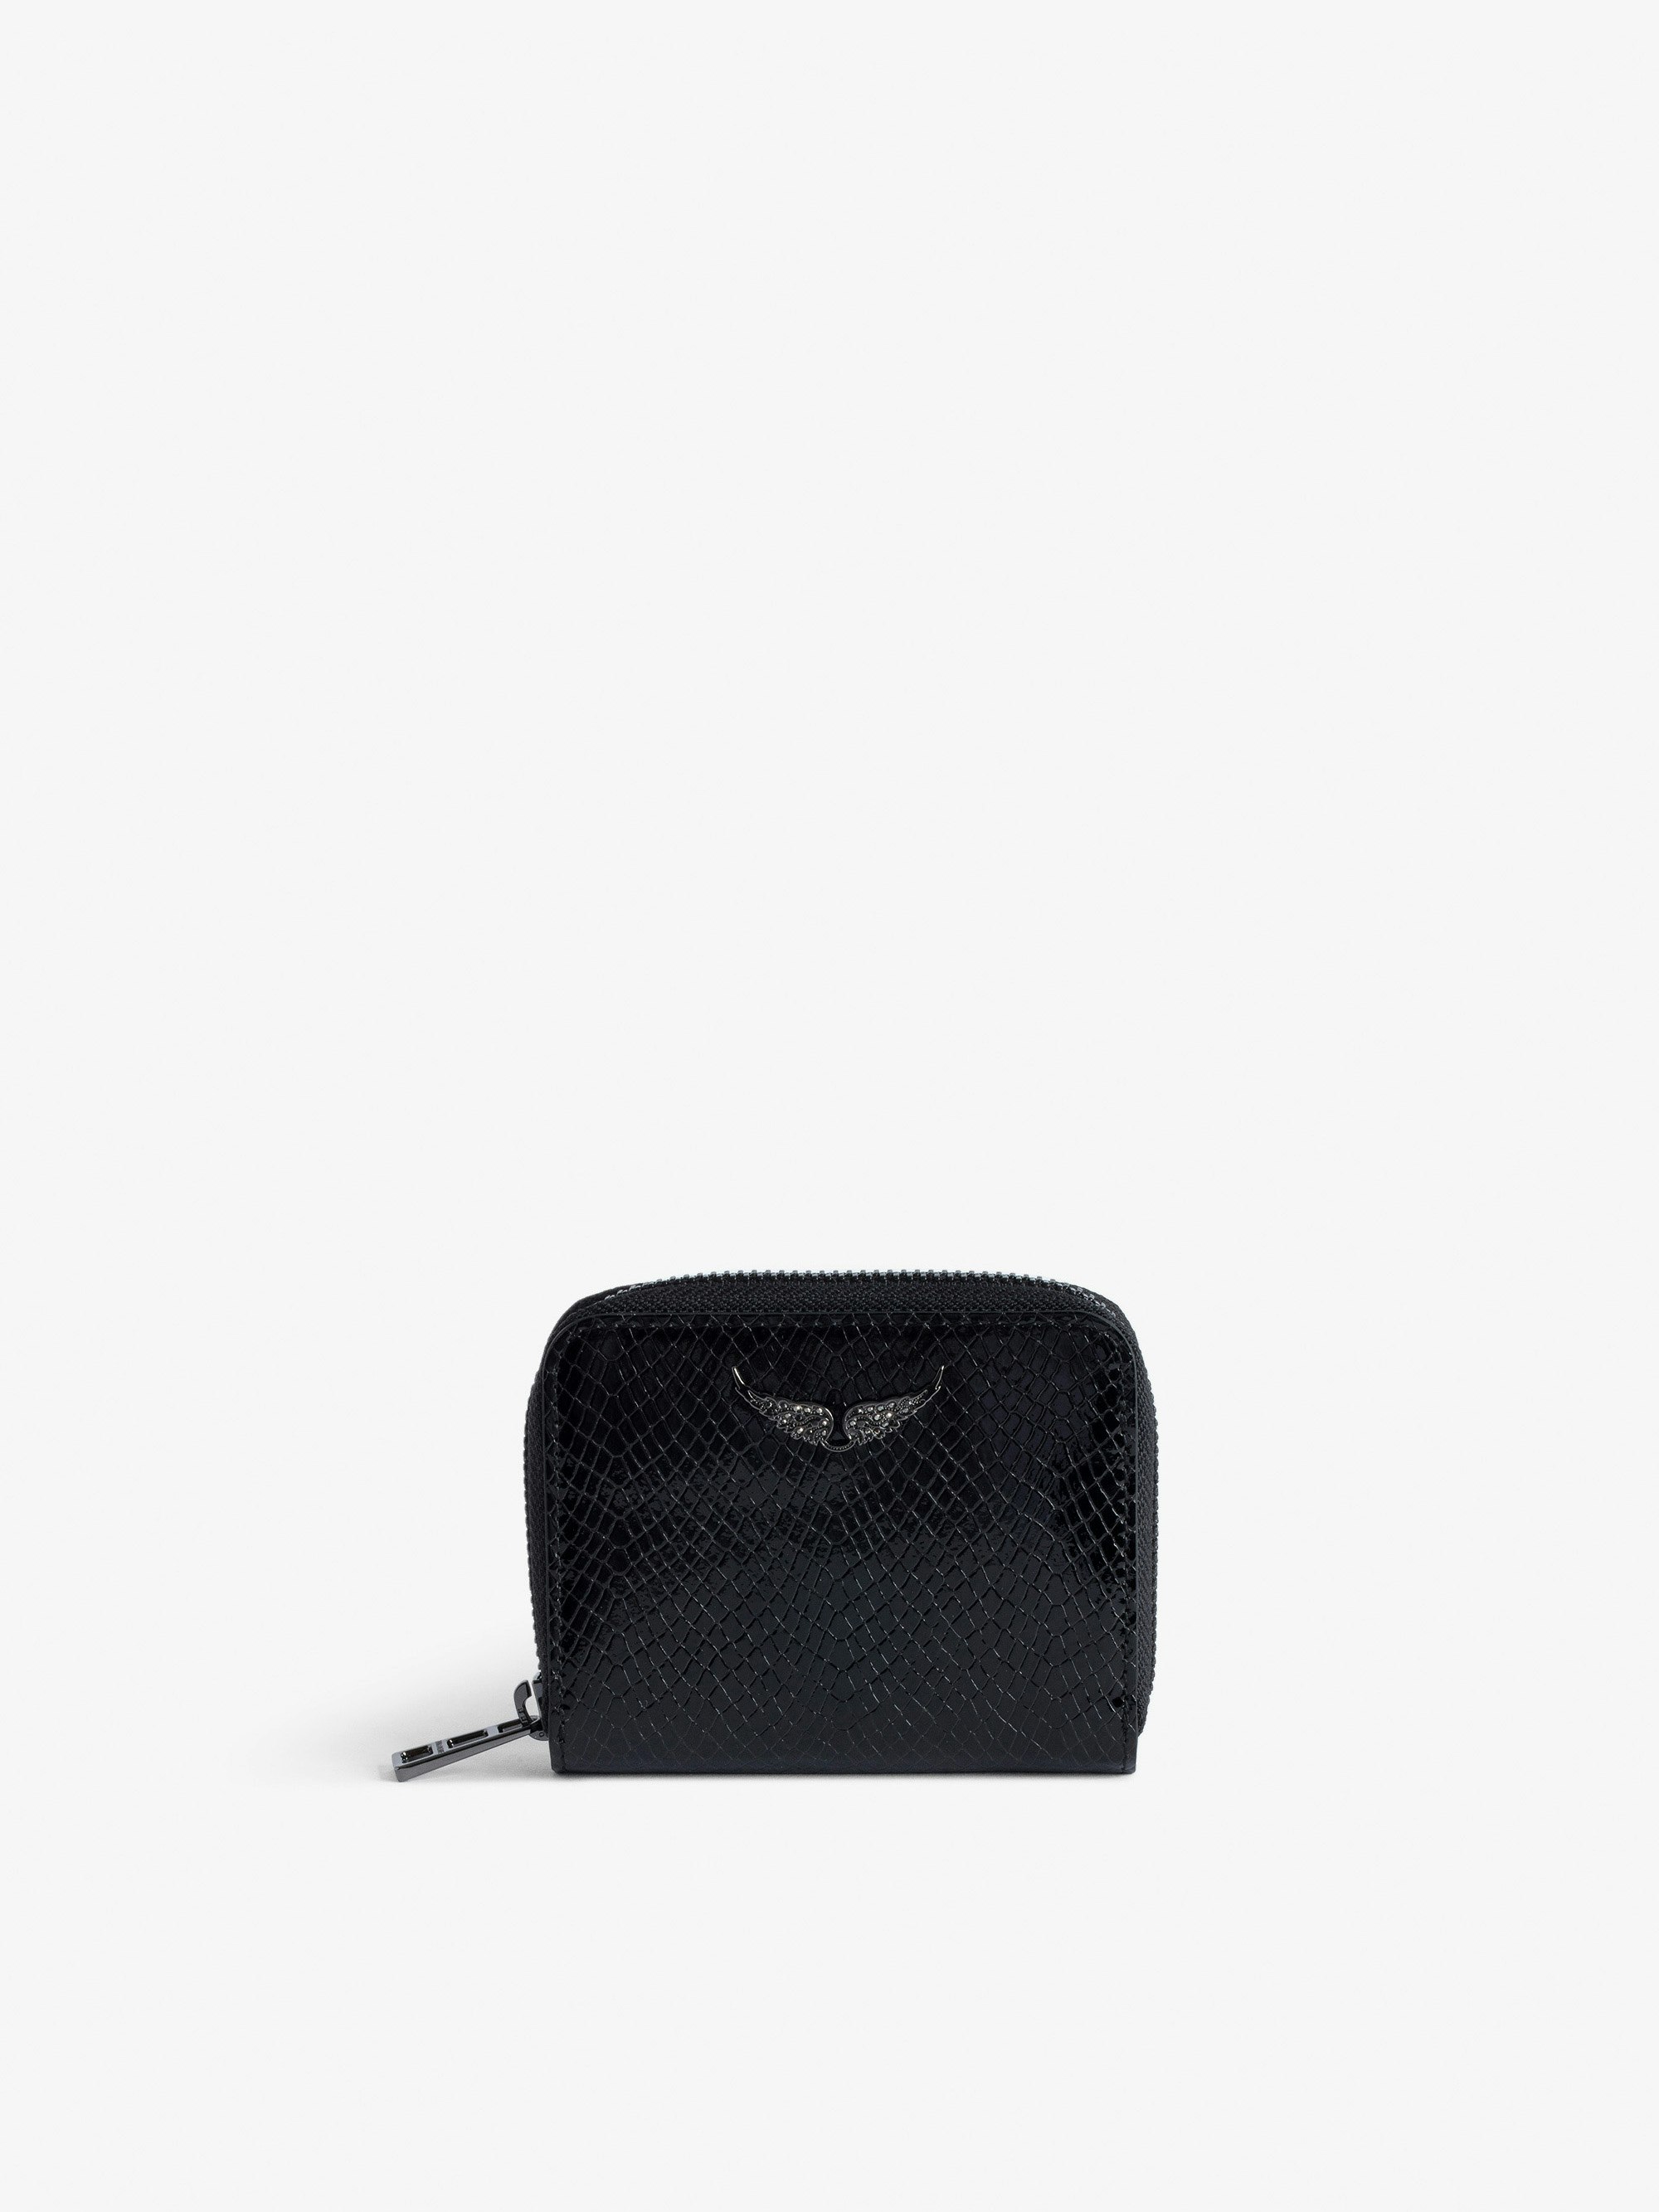 Portamonete Mini ZV Glossy Wild Goffrato - Portafoglio in pelle lucida nero effetto pitone con charm ali in strass da donna.